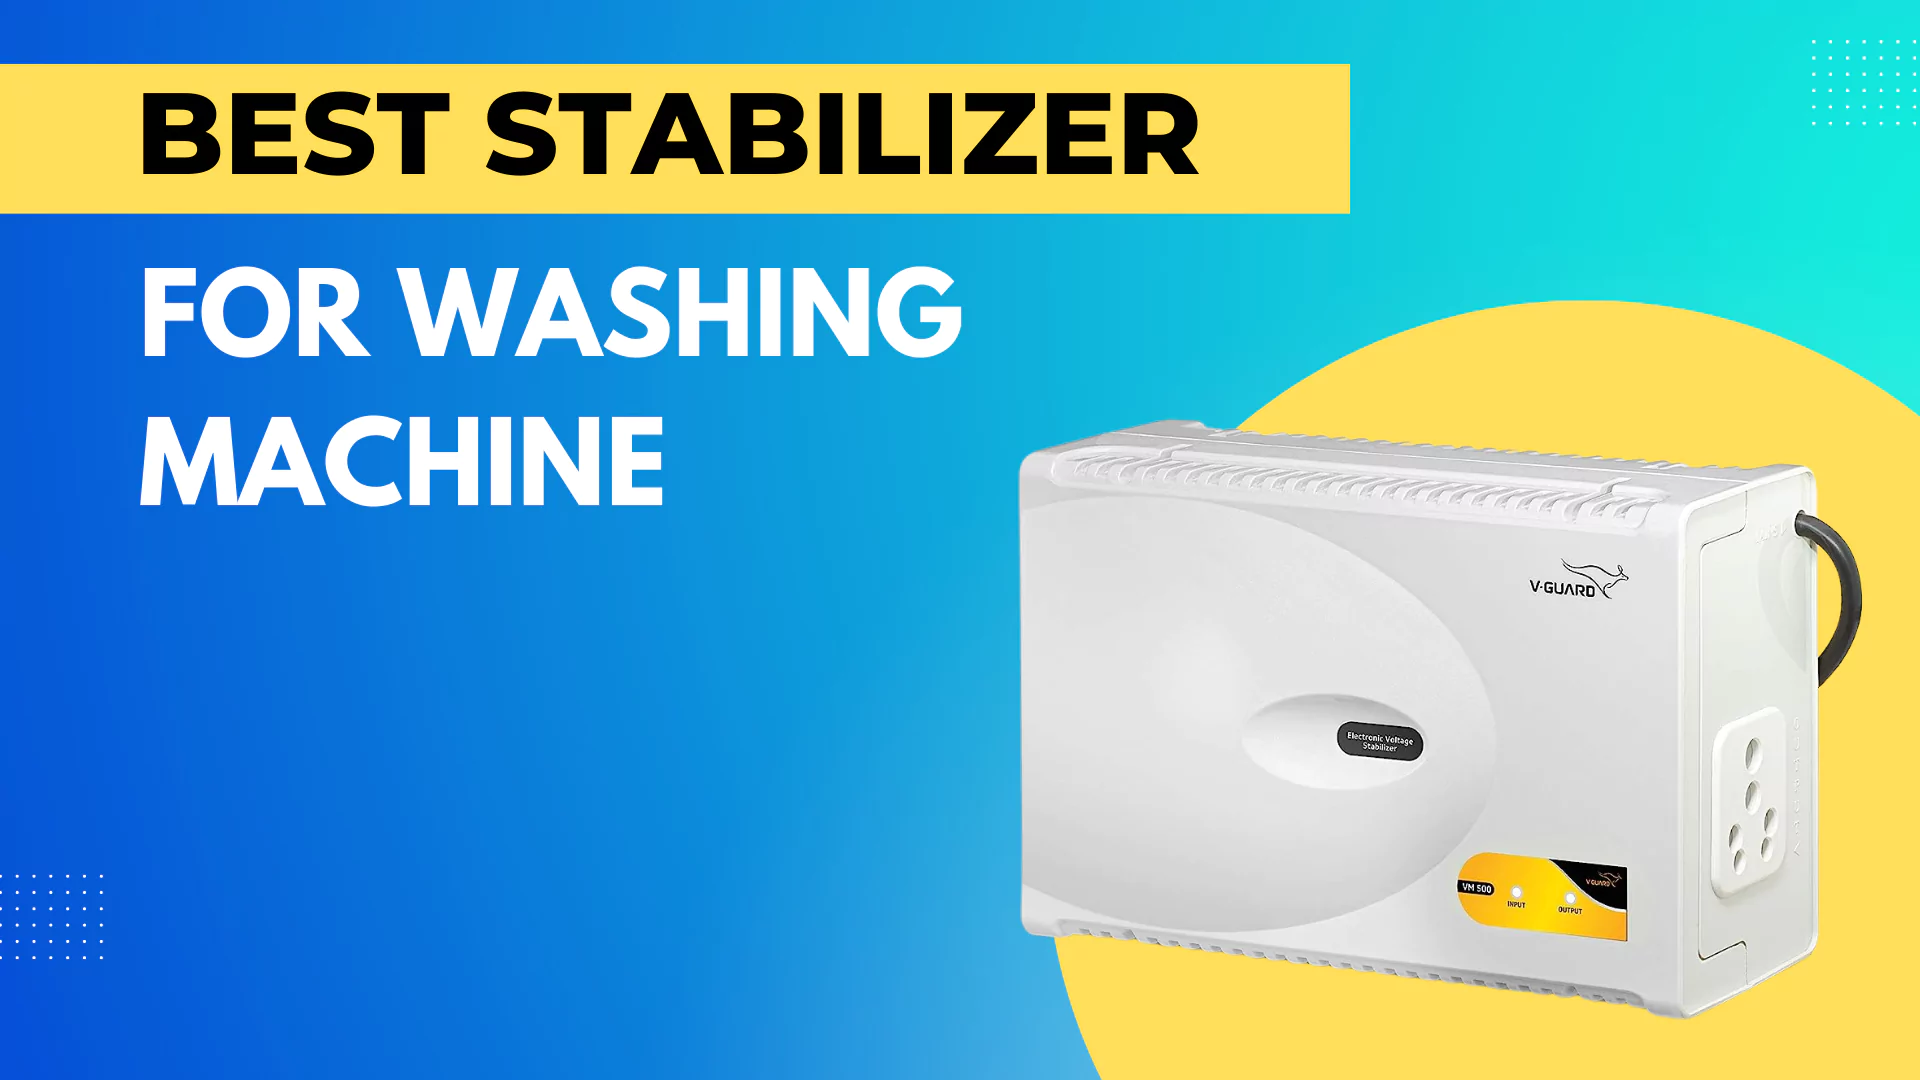 Best Stabilizer for Washing Machine